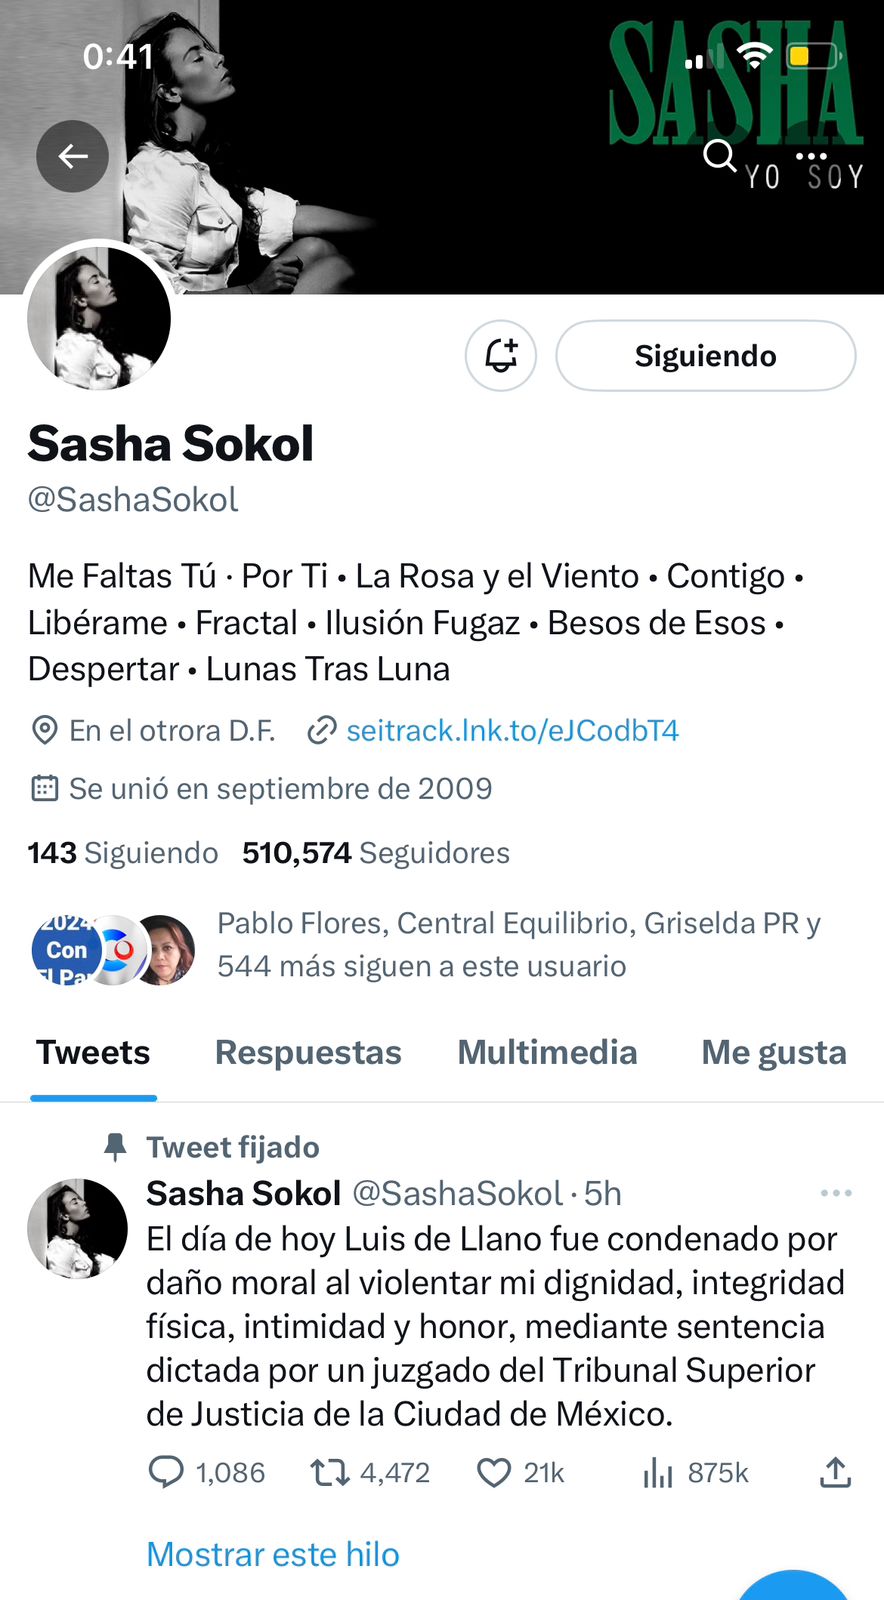 Luis de Llano es condenado por daño moral: Sasha Sokol